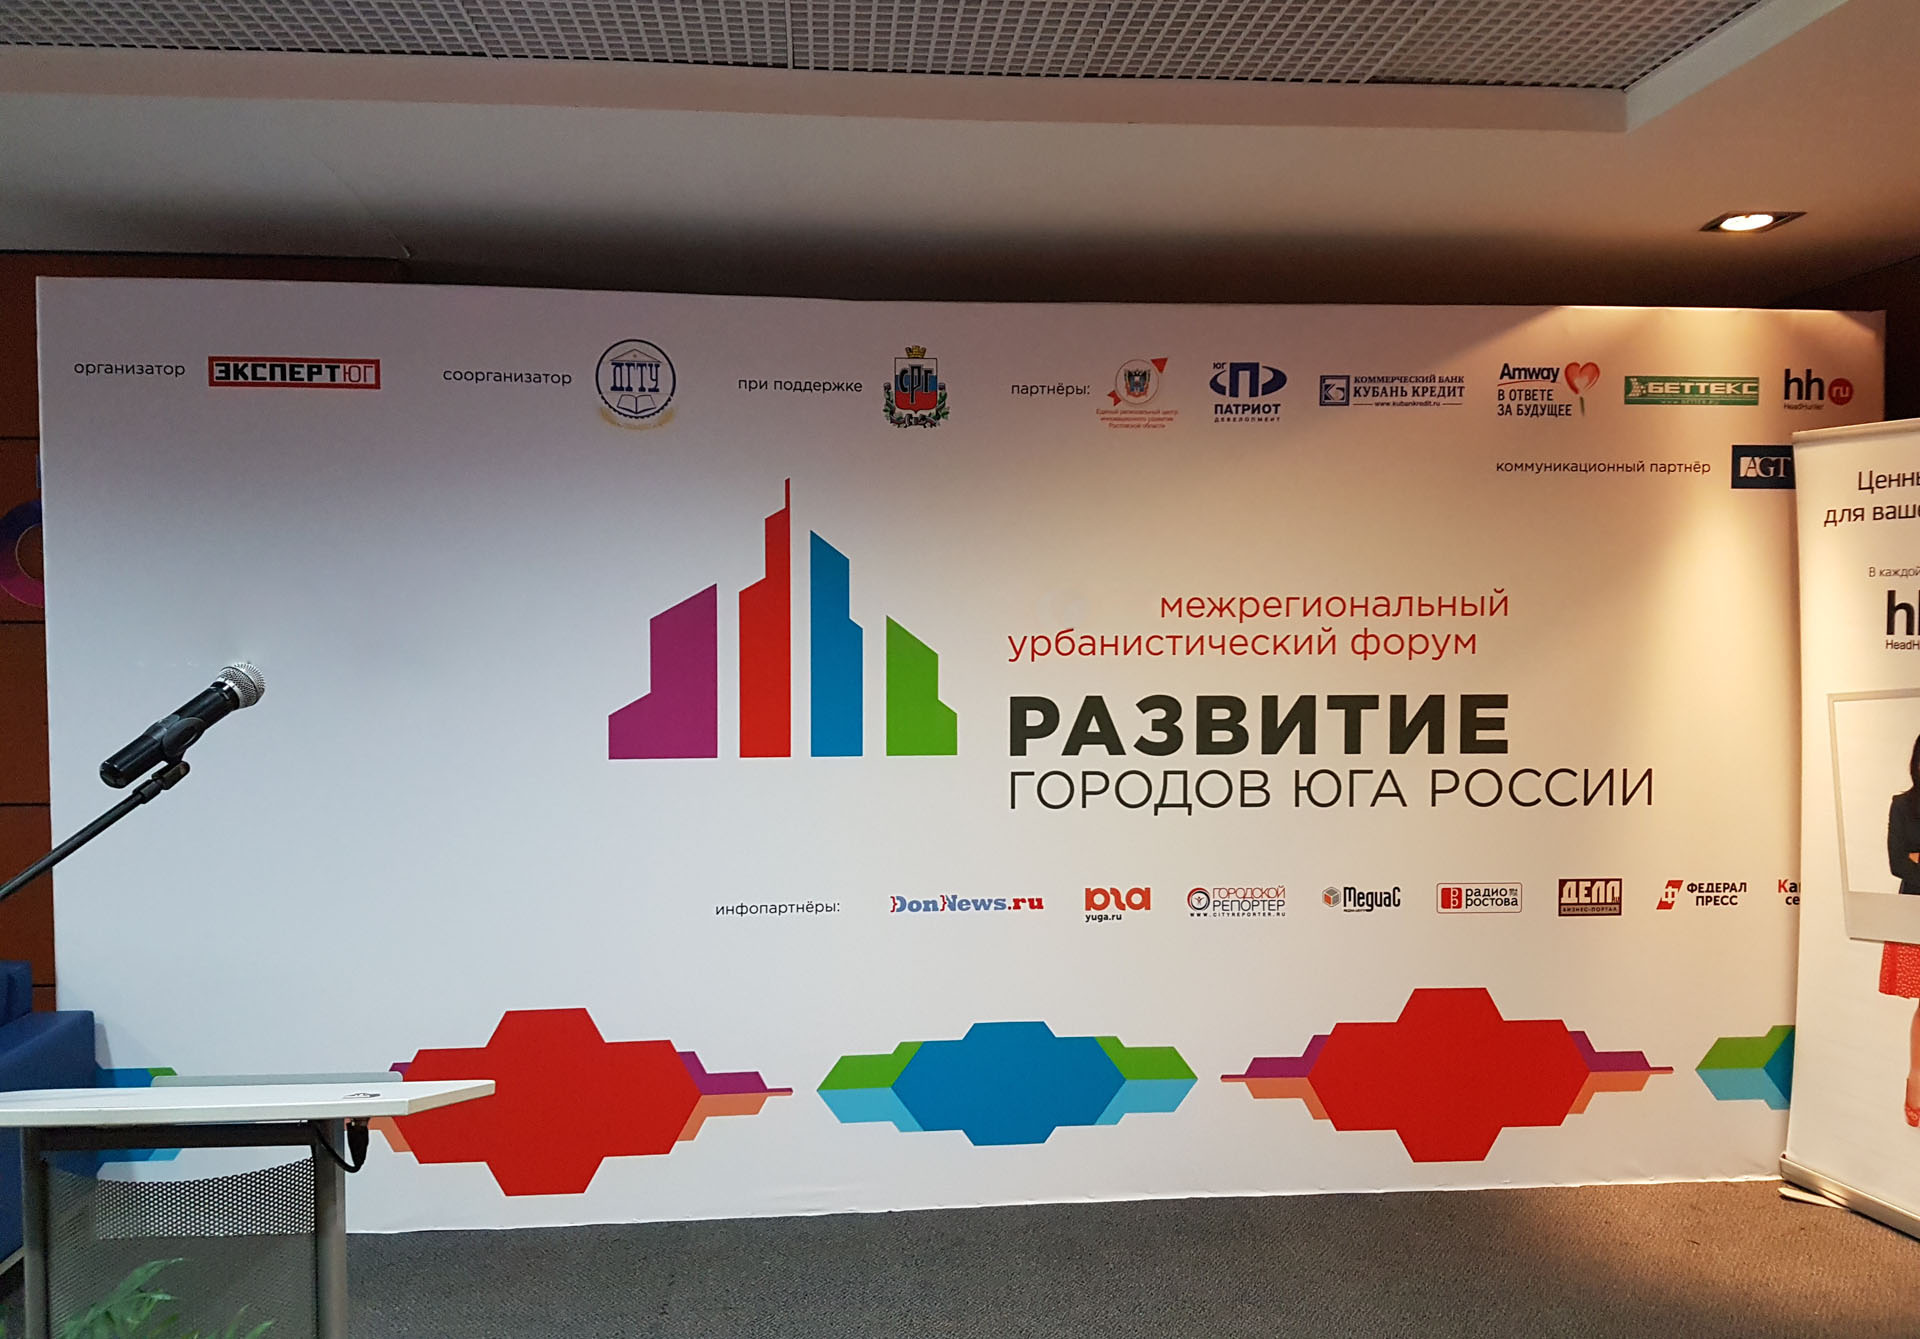 Урбанистический форум «Развития городов Юга России» состоится в Ростове - фото 1